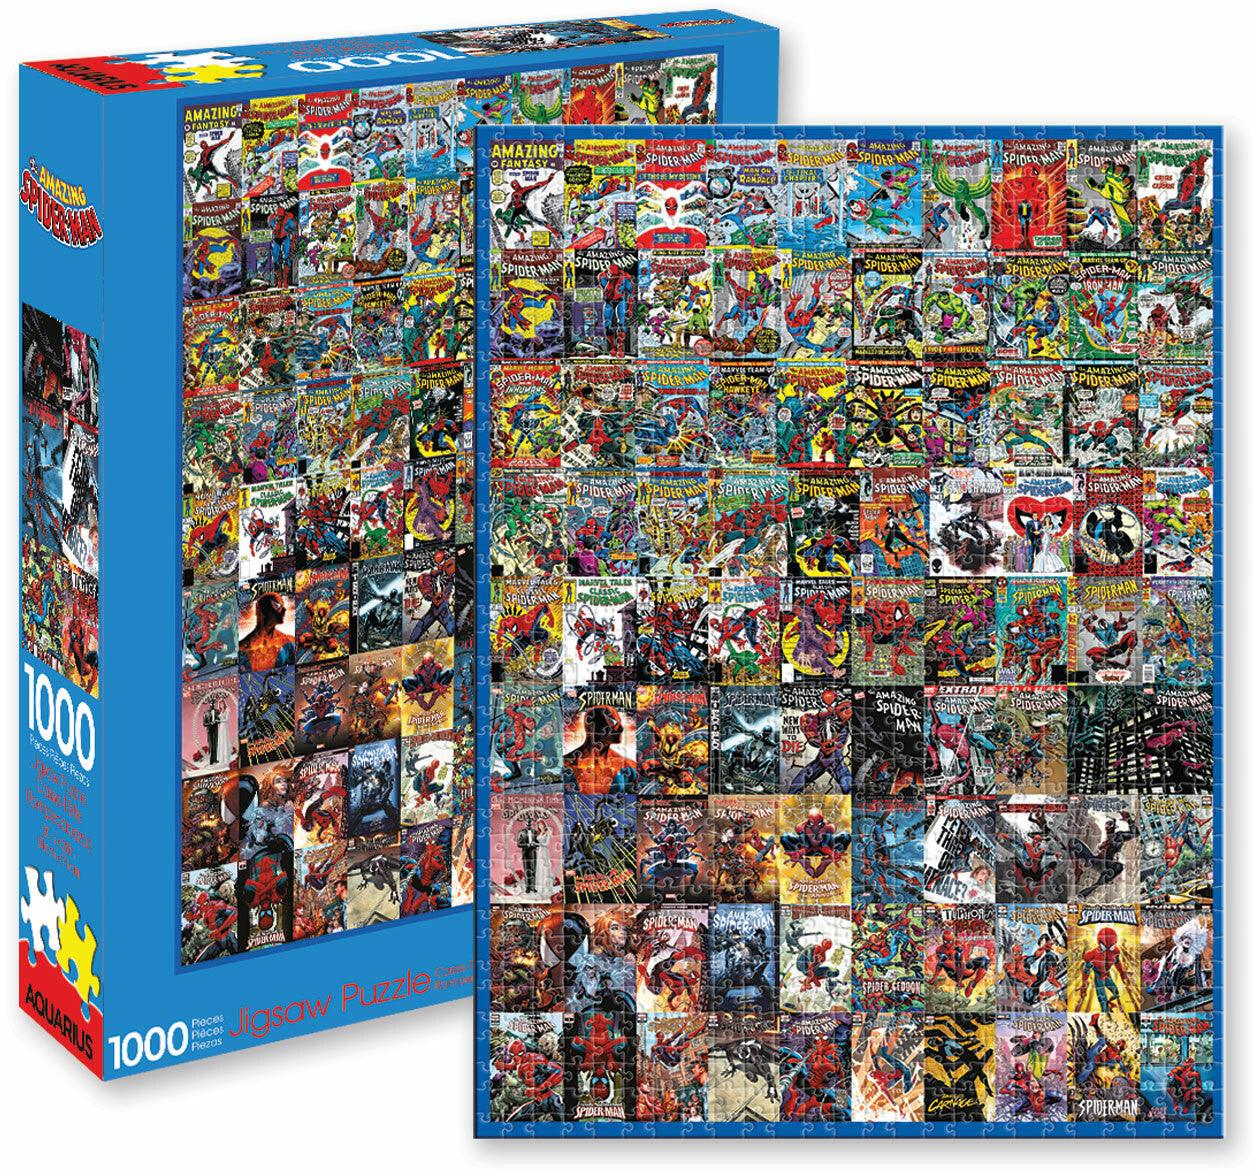 VR-92636 Aquarius Puzzle Marvel Spiderman Covers Puzzle 1,000 pieces - Aquarius - Titan Pop Culture